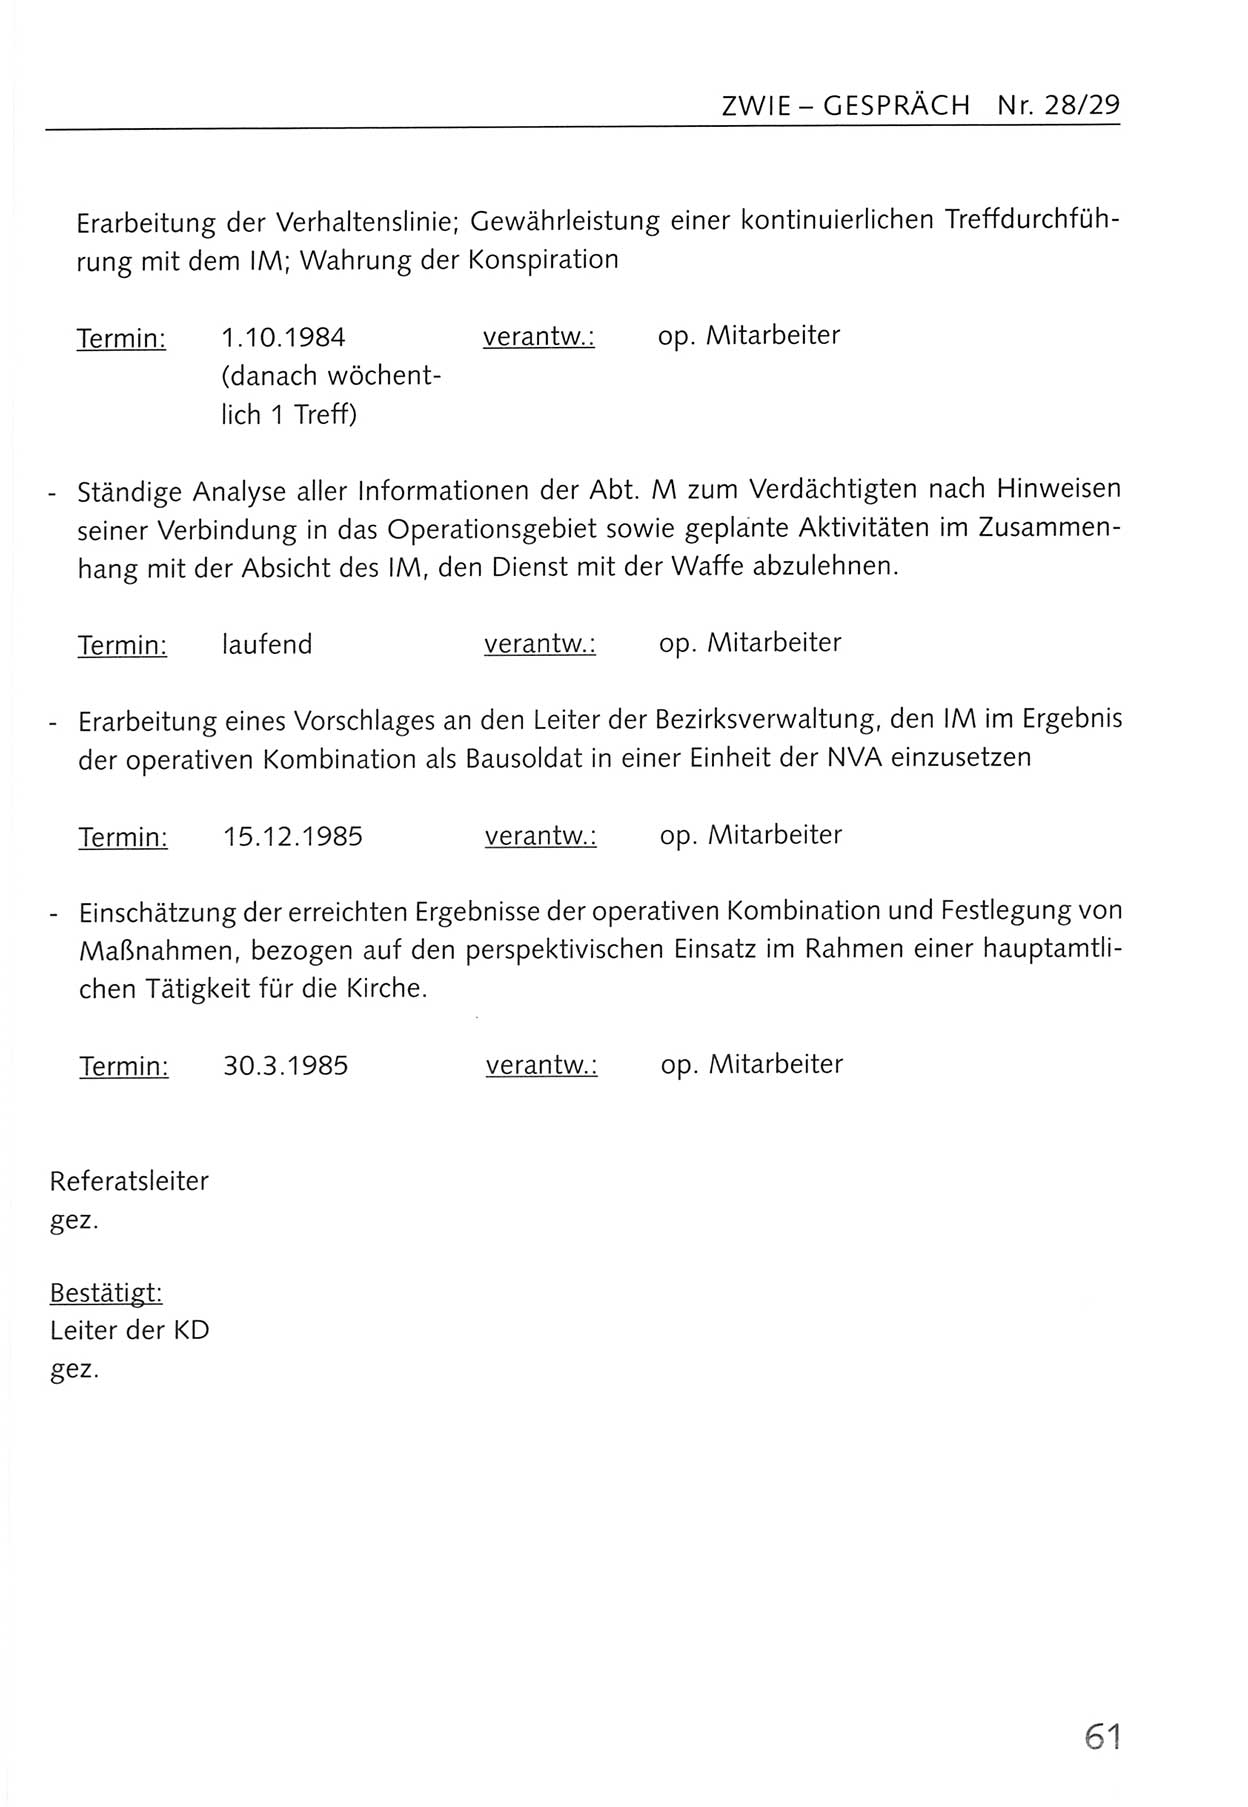 Zwie-Gespräch, Beiträge zum Umgang mit der Staatssicherheits-Vergangenheit [Deutsche Demokratische Republik (DDR)], Ausgabe Nr. 28/29, Berlin 1995, Seite 61 (Zwie-Gespr. Ausg. 28/29 1995, S. 61)